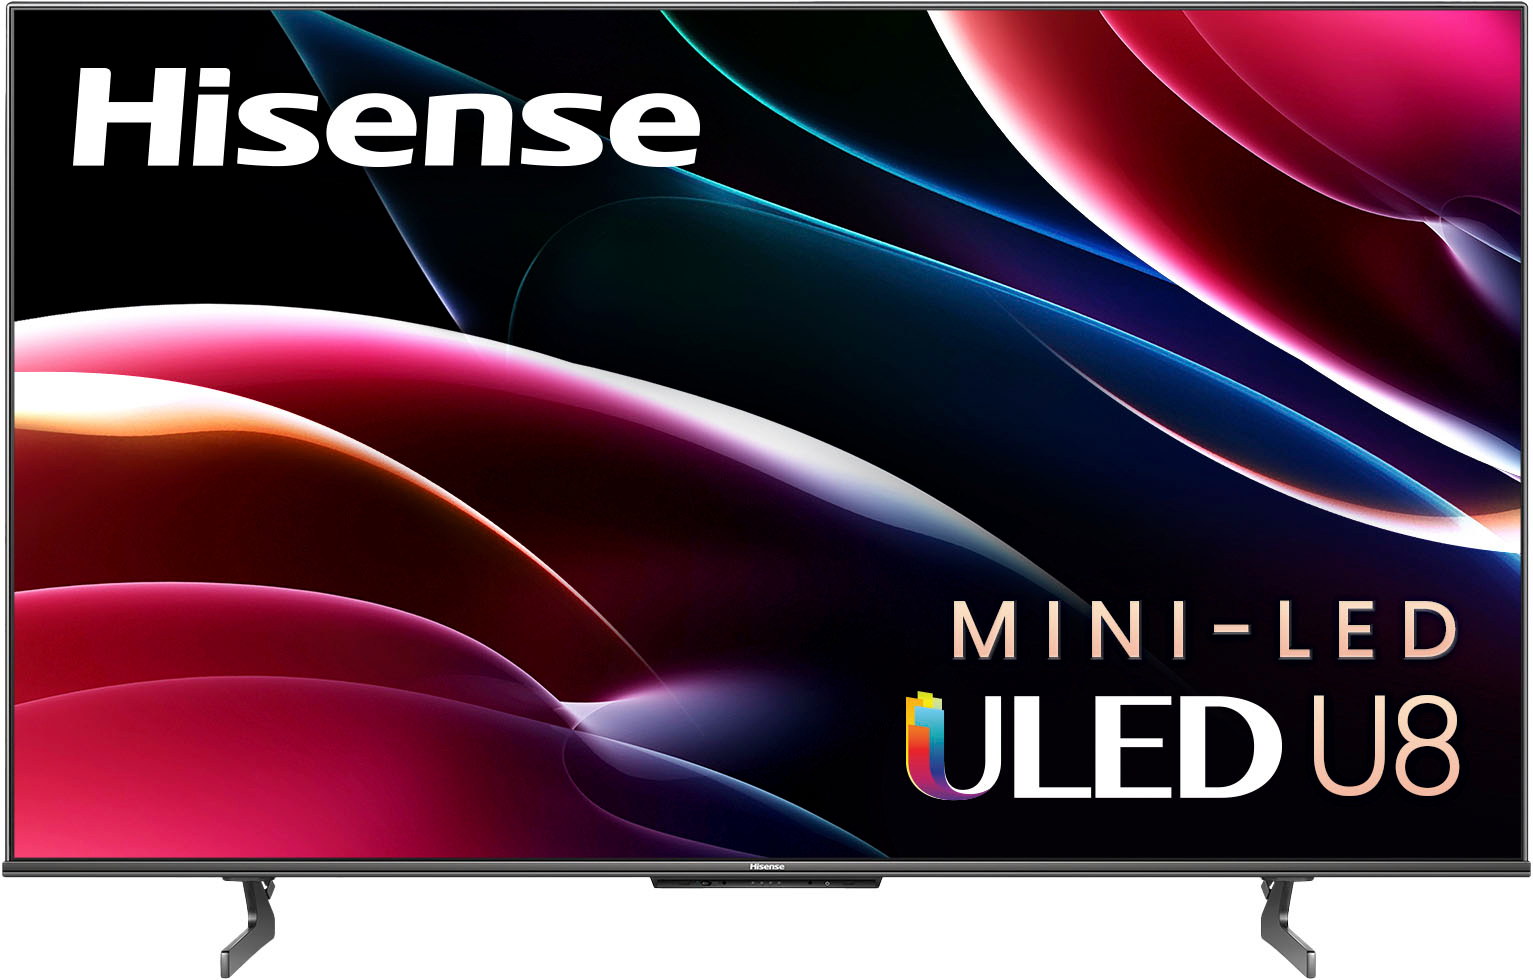 Hisense 65" Class U8H Series Mini LED Quantum ULED 4K UHD Smart Google TV 65U8H - Best Buy $799